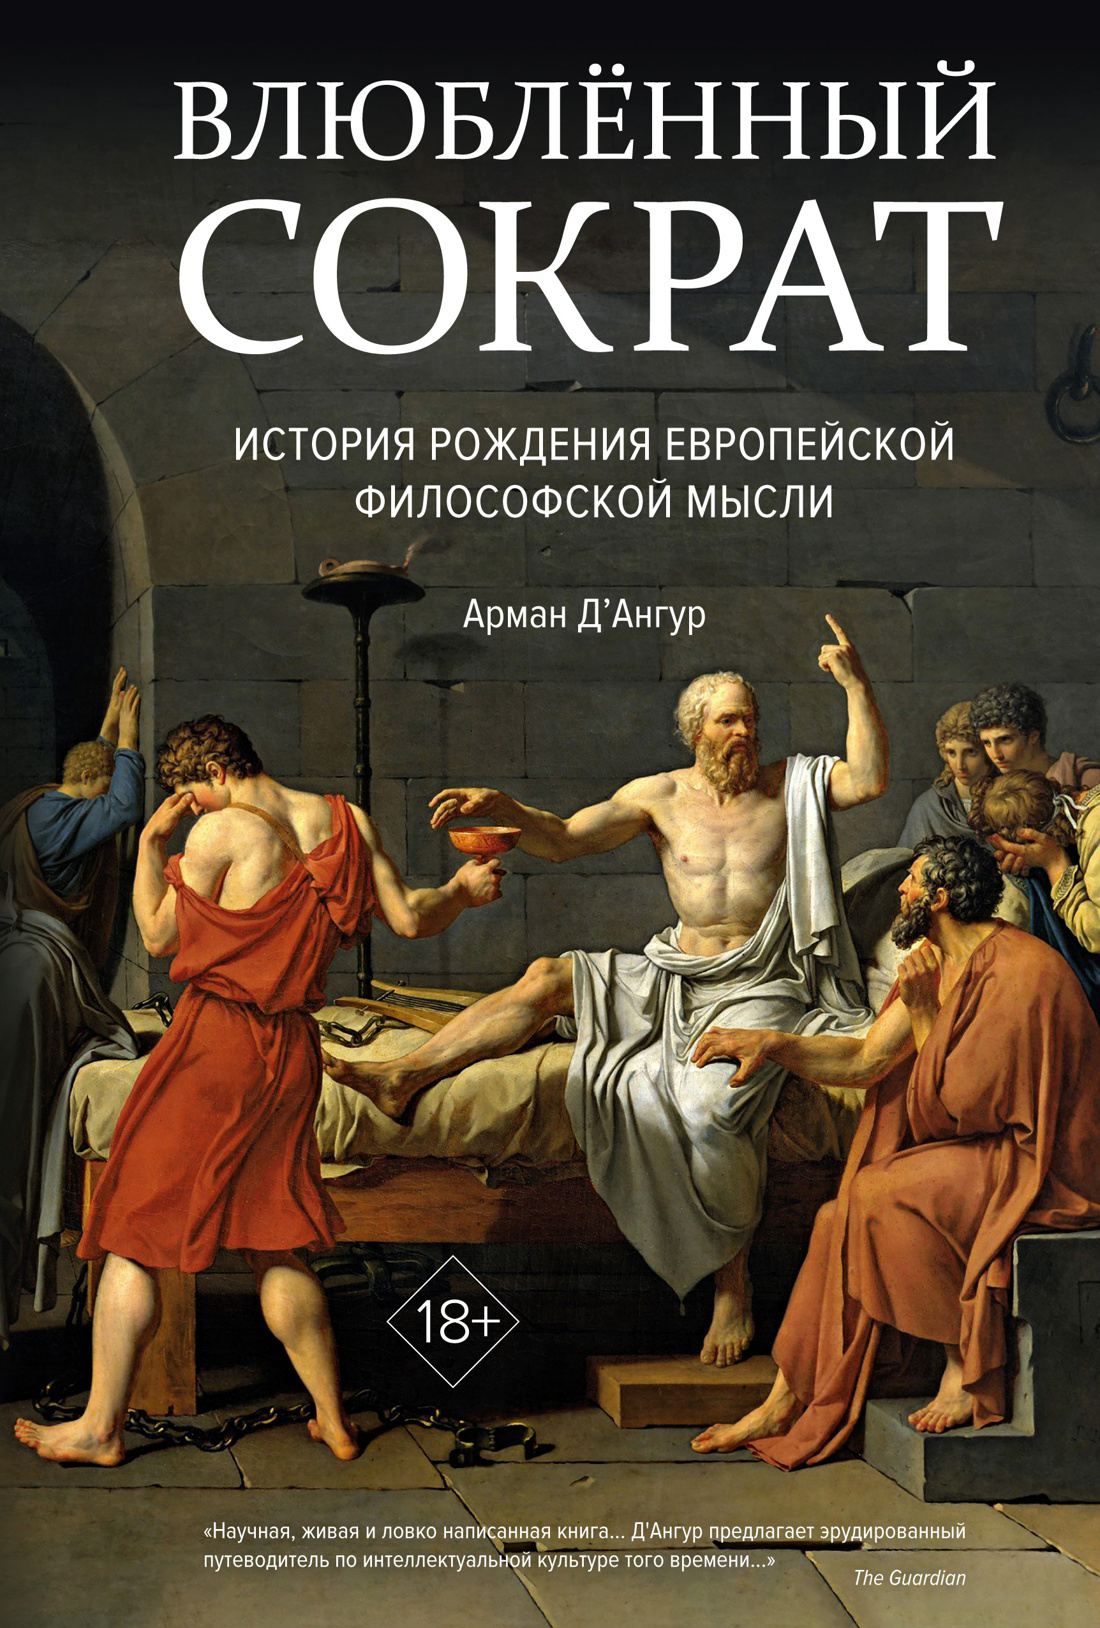 Влюбленный Сократ. История рождения европейской философской мысли влюбленный сократ история рождения европейской философской мысли